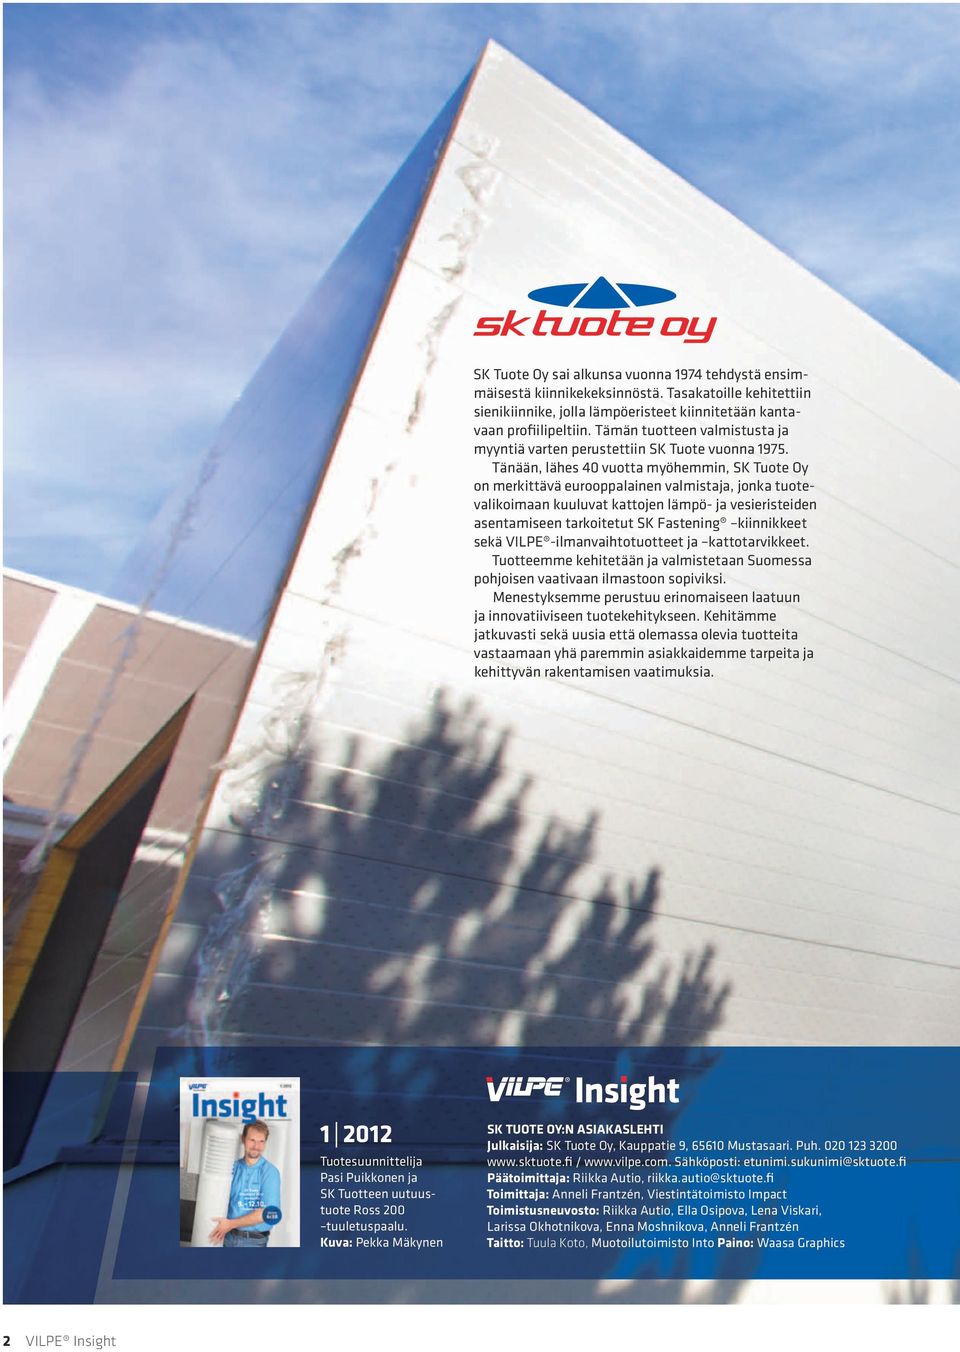 Tänään, lähes 40 vuotta myöhemmin, SK Tuote Oy on merkittävä eurooppalainen valmistaja, jonka tuotevalikoimaan kuuluvat kattojen lämpö- ja vesieristeiden asentamiseen tarkoitetut SK Fastening